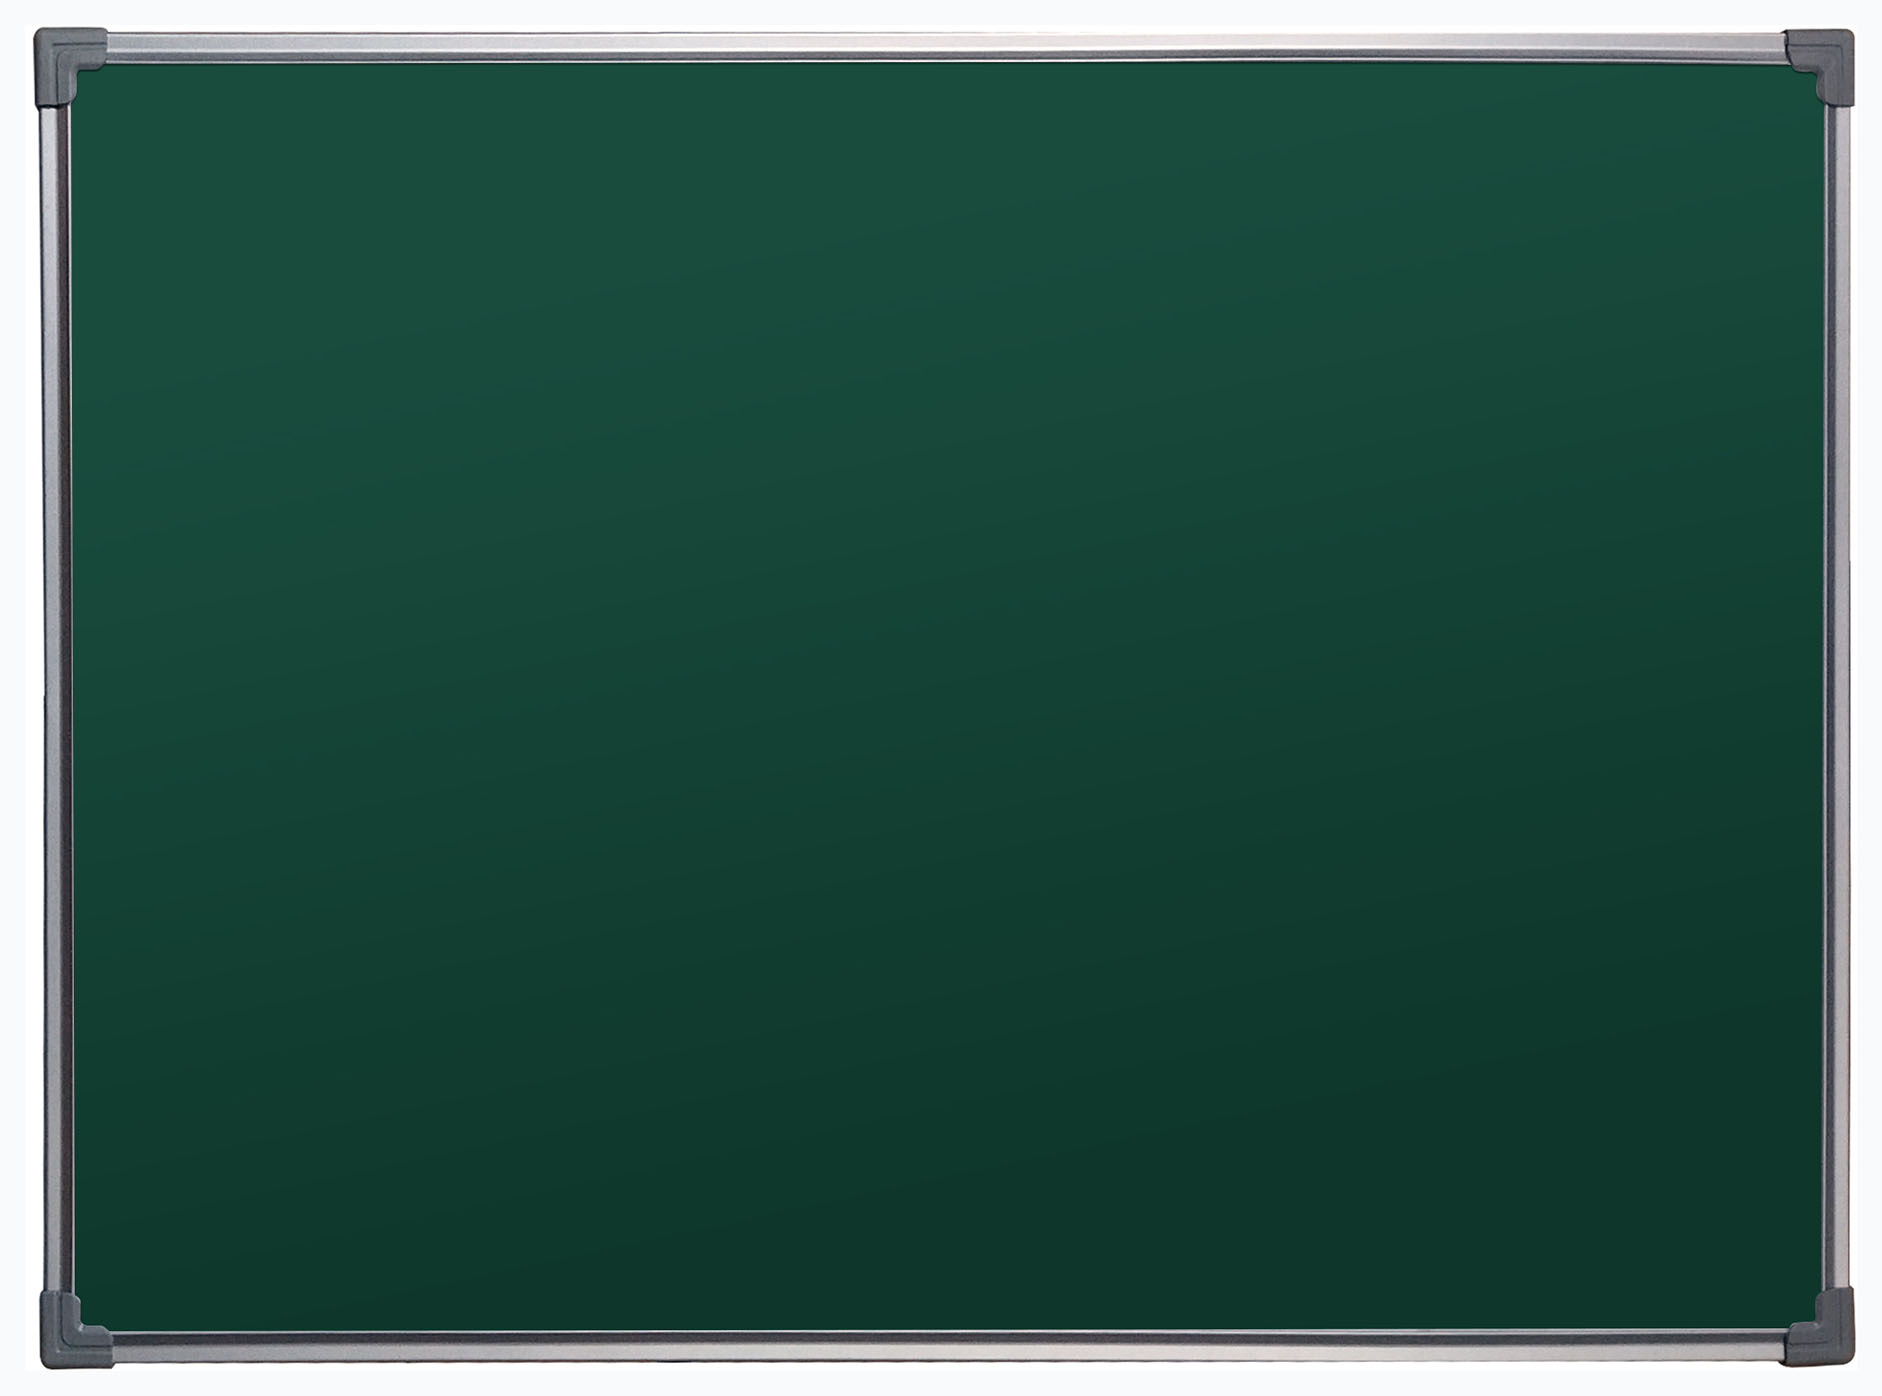 Демонстрационная доска BoardSYS Ecolite магнитно-маркерная, 90x120см, лак (зеленый)/алюминий (серый) (10МСС90)